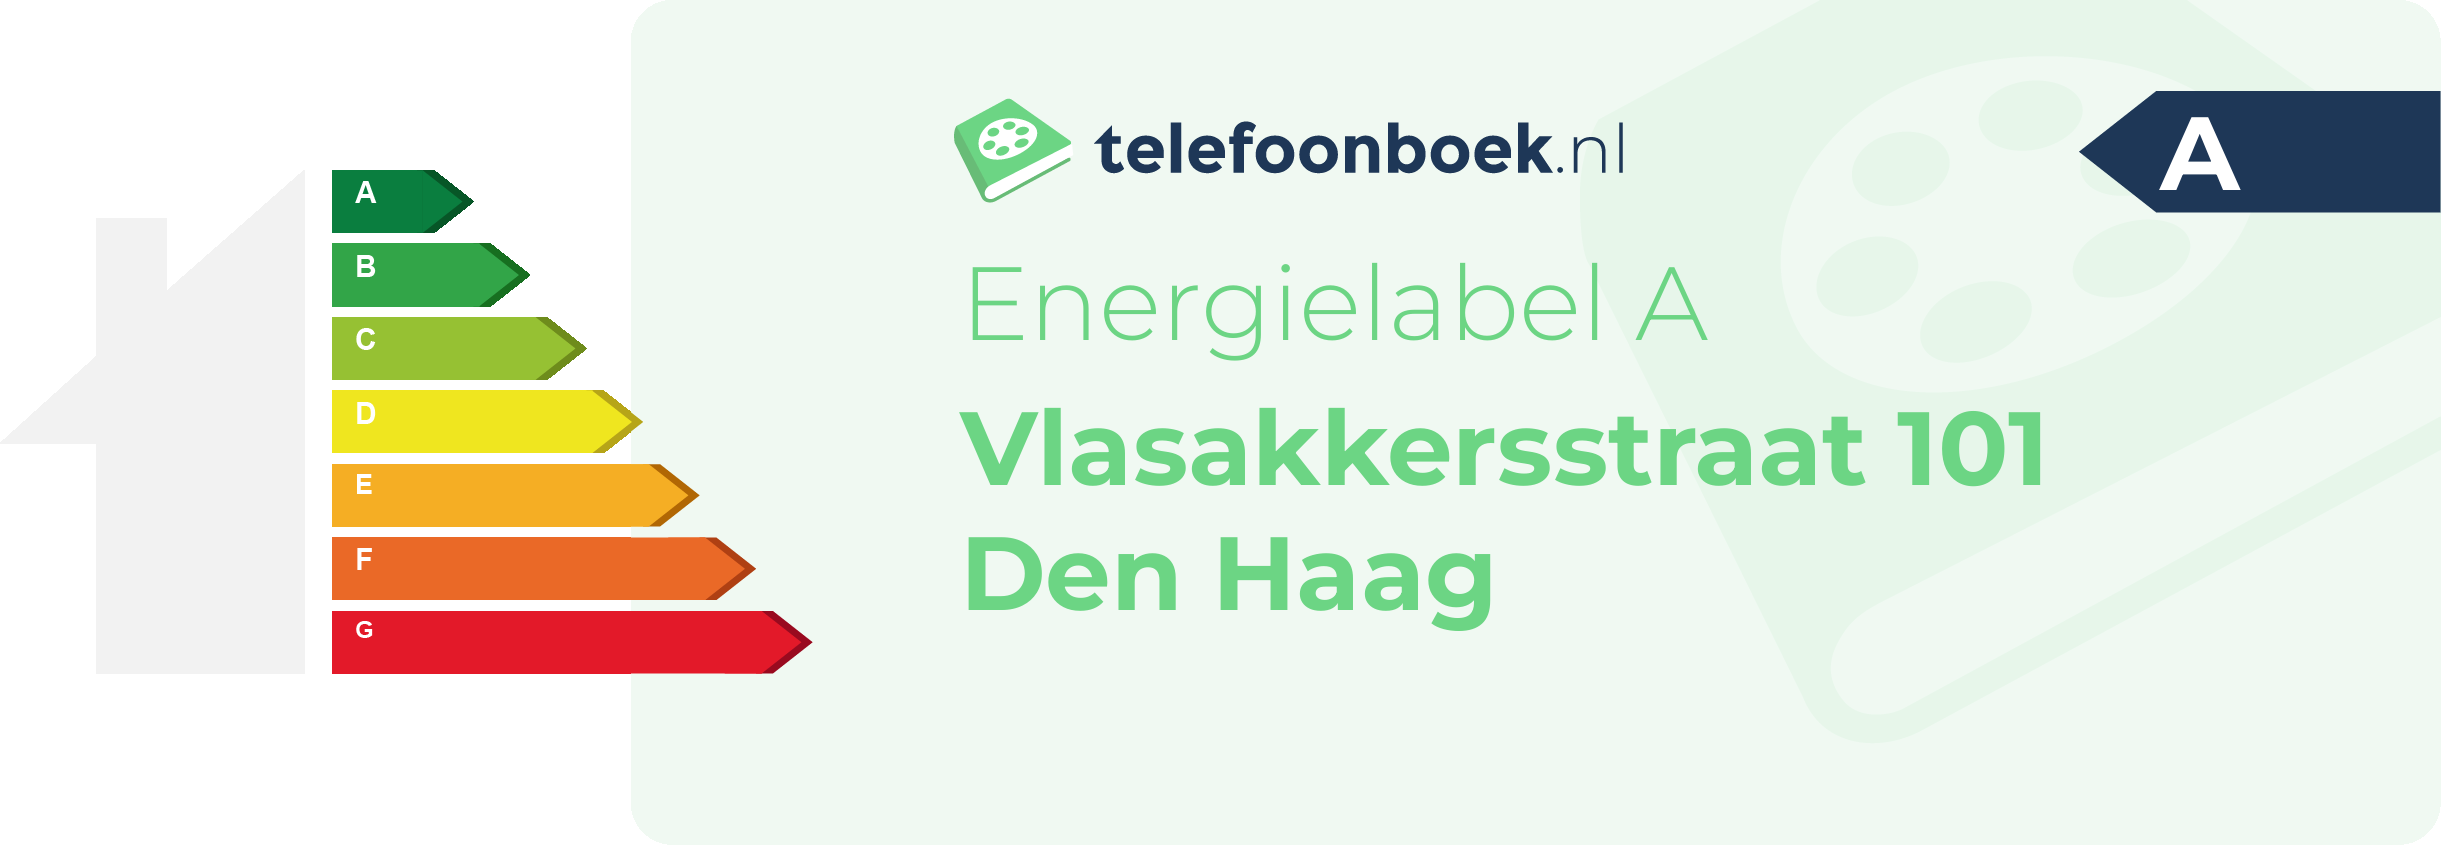 Energielabel Vlasakkersstraat 101 Den Haag